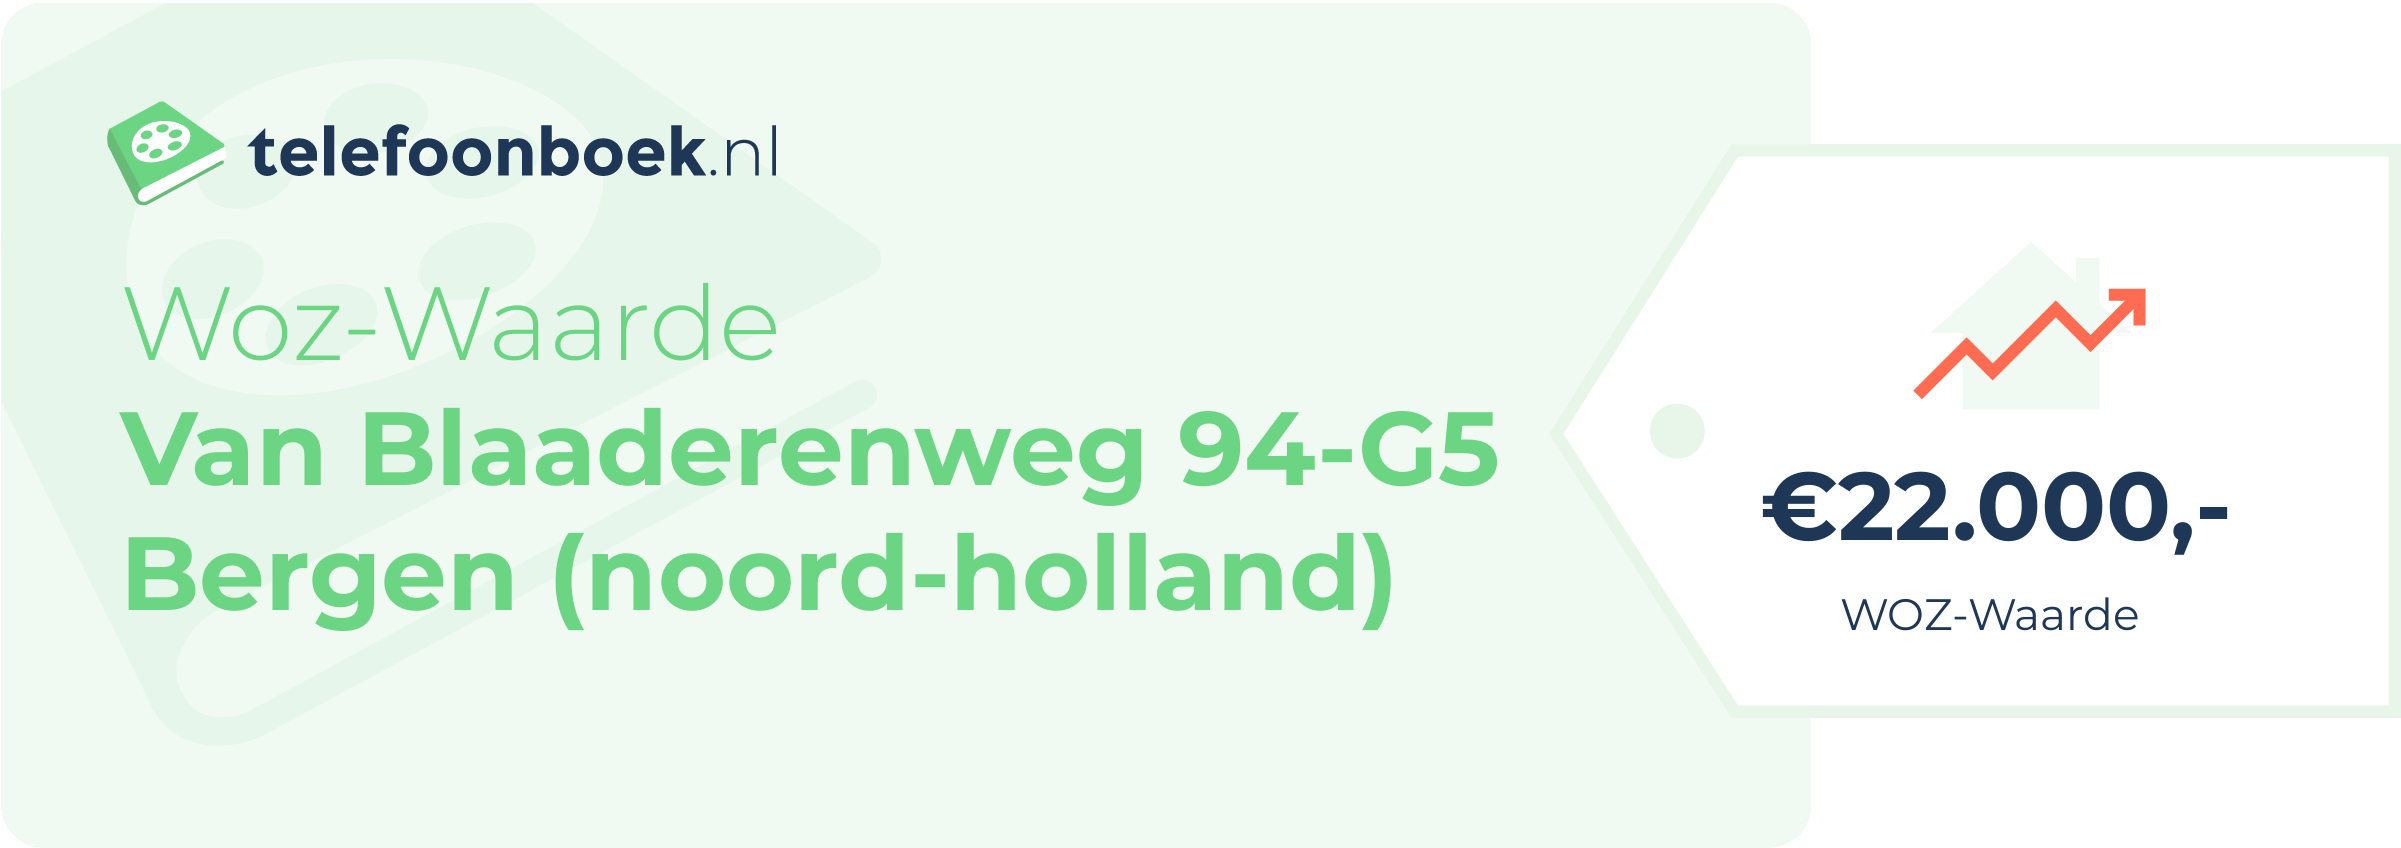 WOZ-waarde Van Blaaderenweg 94-G5 Bergen (Noord-Holland)